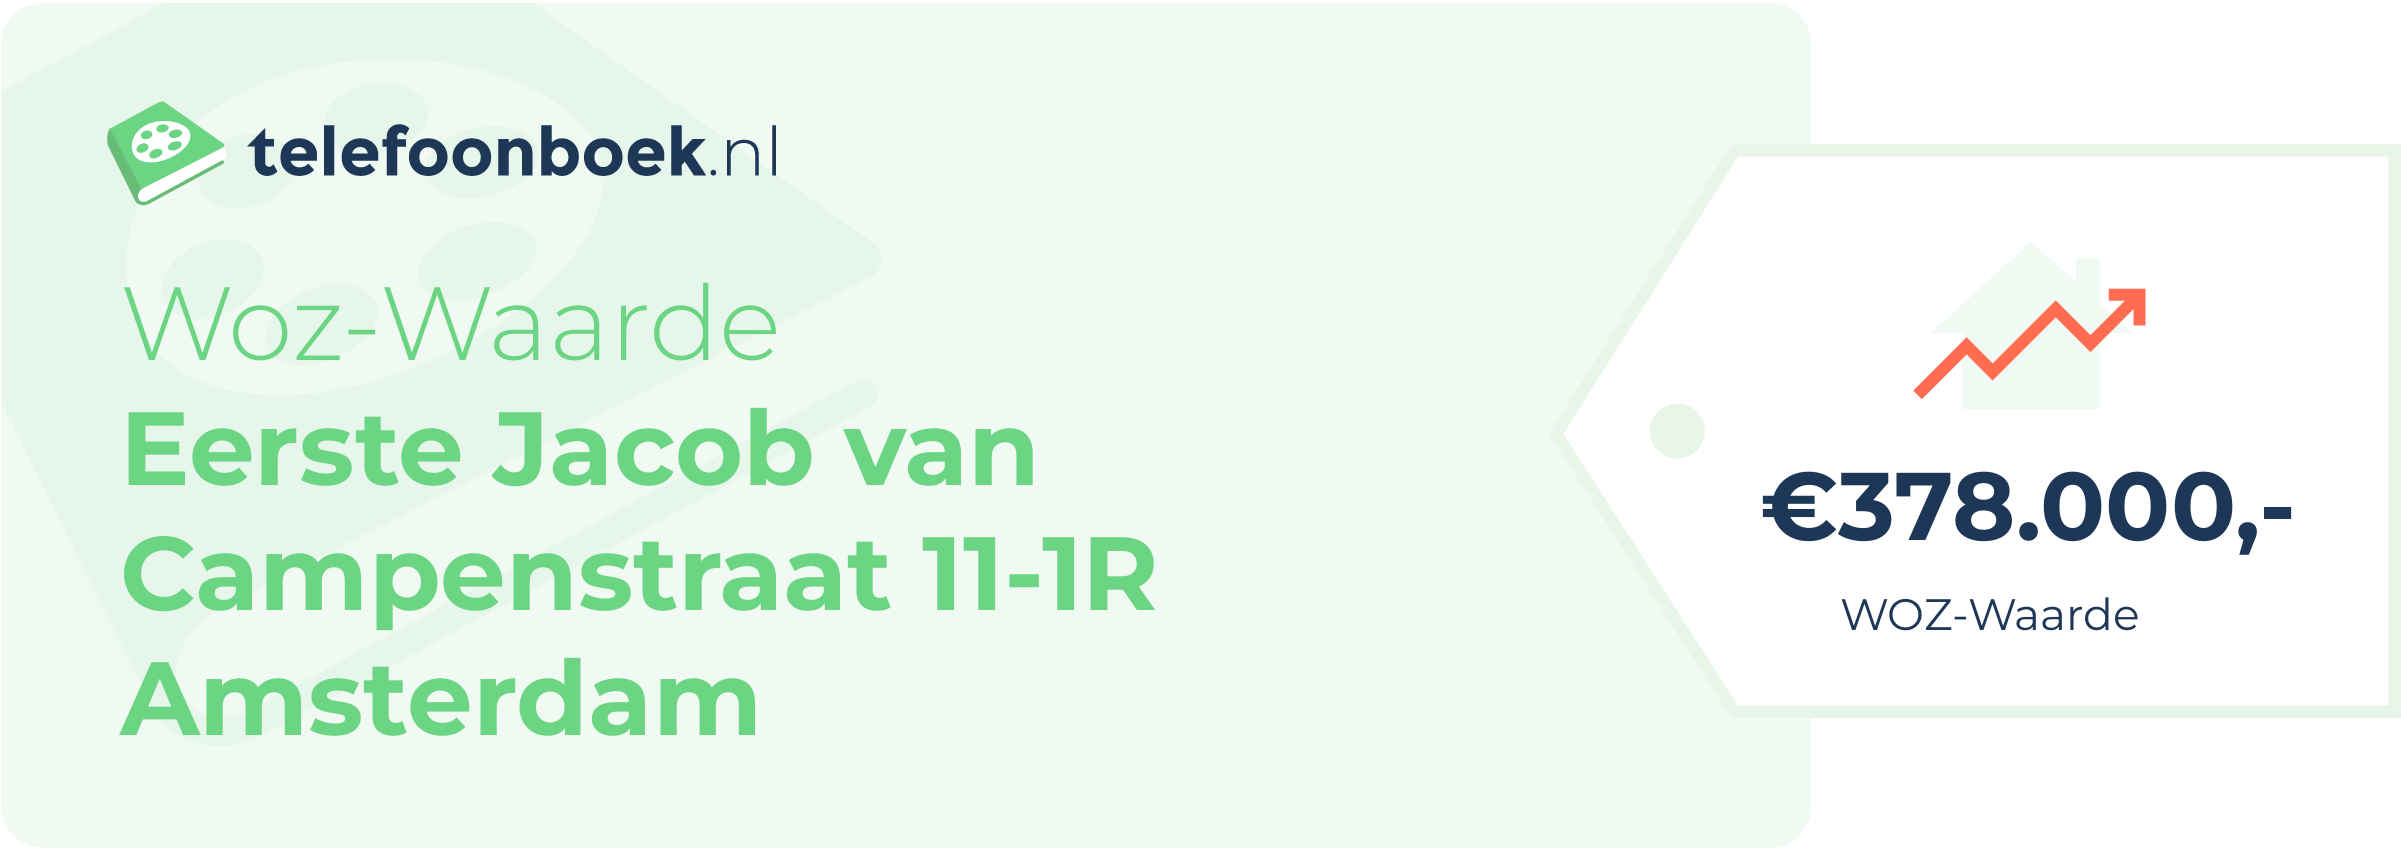 WOZ-waarde Eerste Jacob Van Campenstraat 11-1R Amsterdam